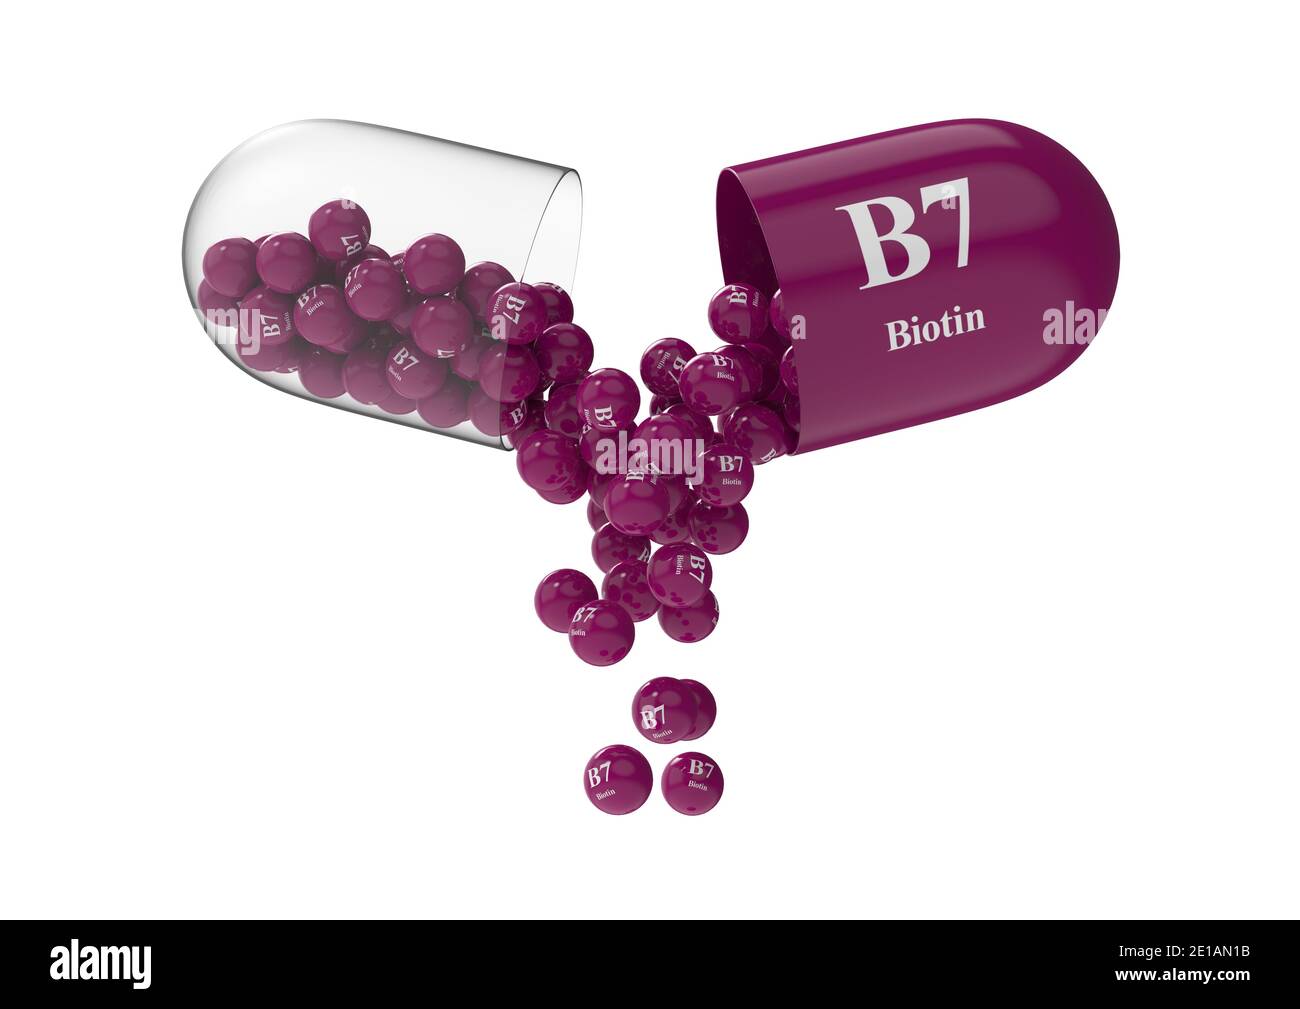 Ouvrir la capsule de b7 biotine à partir de laquelle la composition en vitamines est versée. Illustration du rendu médical 3D Banque D'Images